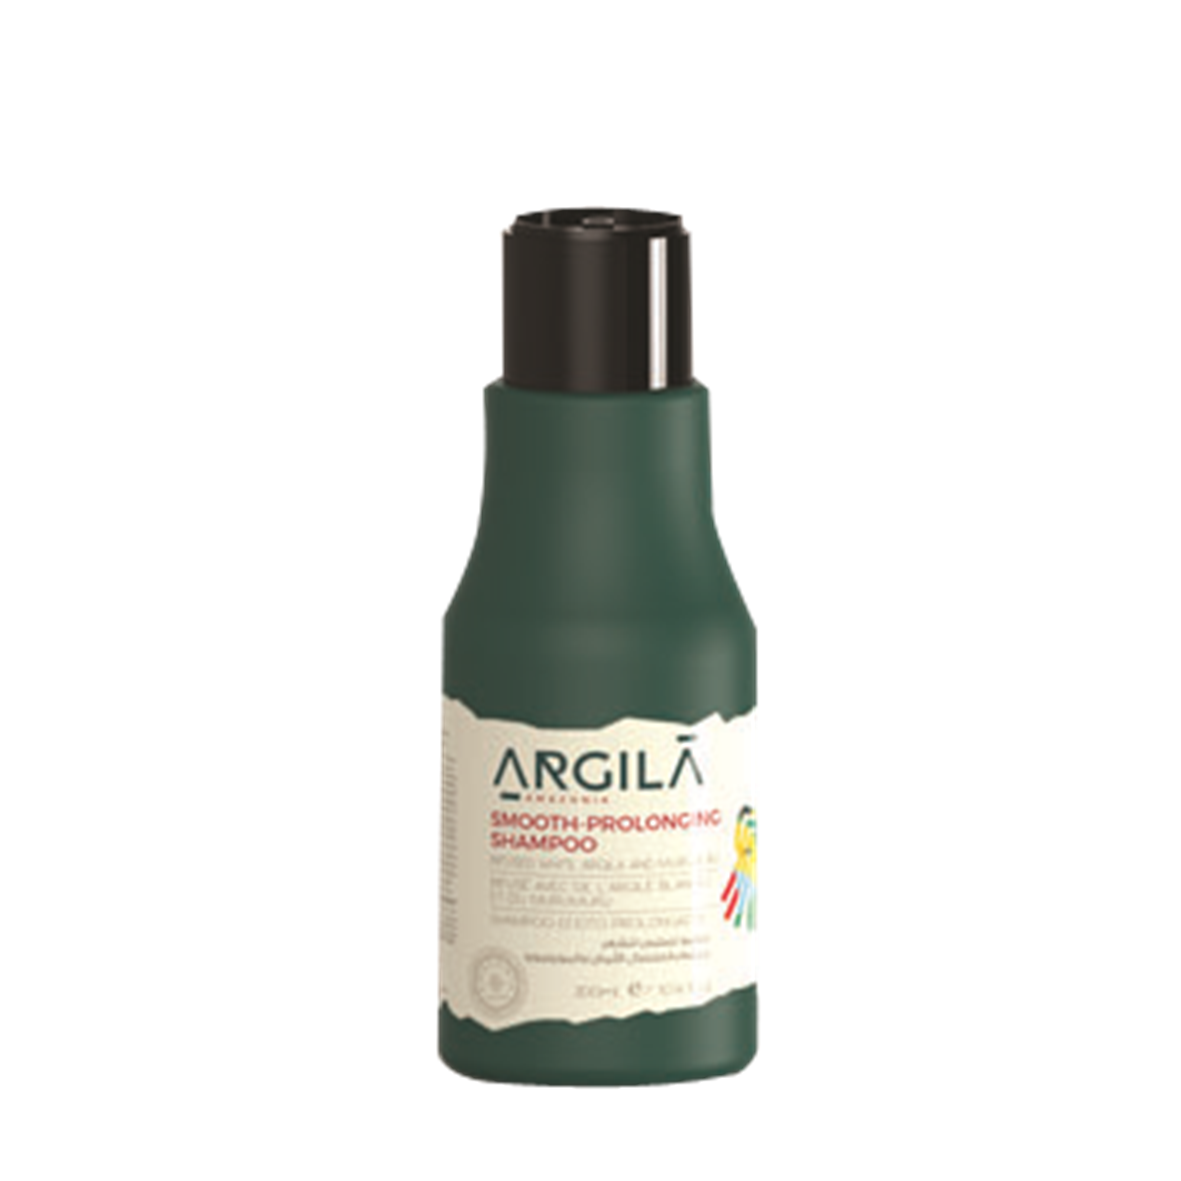 Argila Amazonia Smooth Prolonging Shampoo